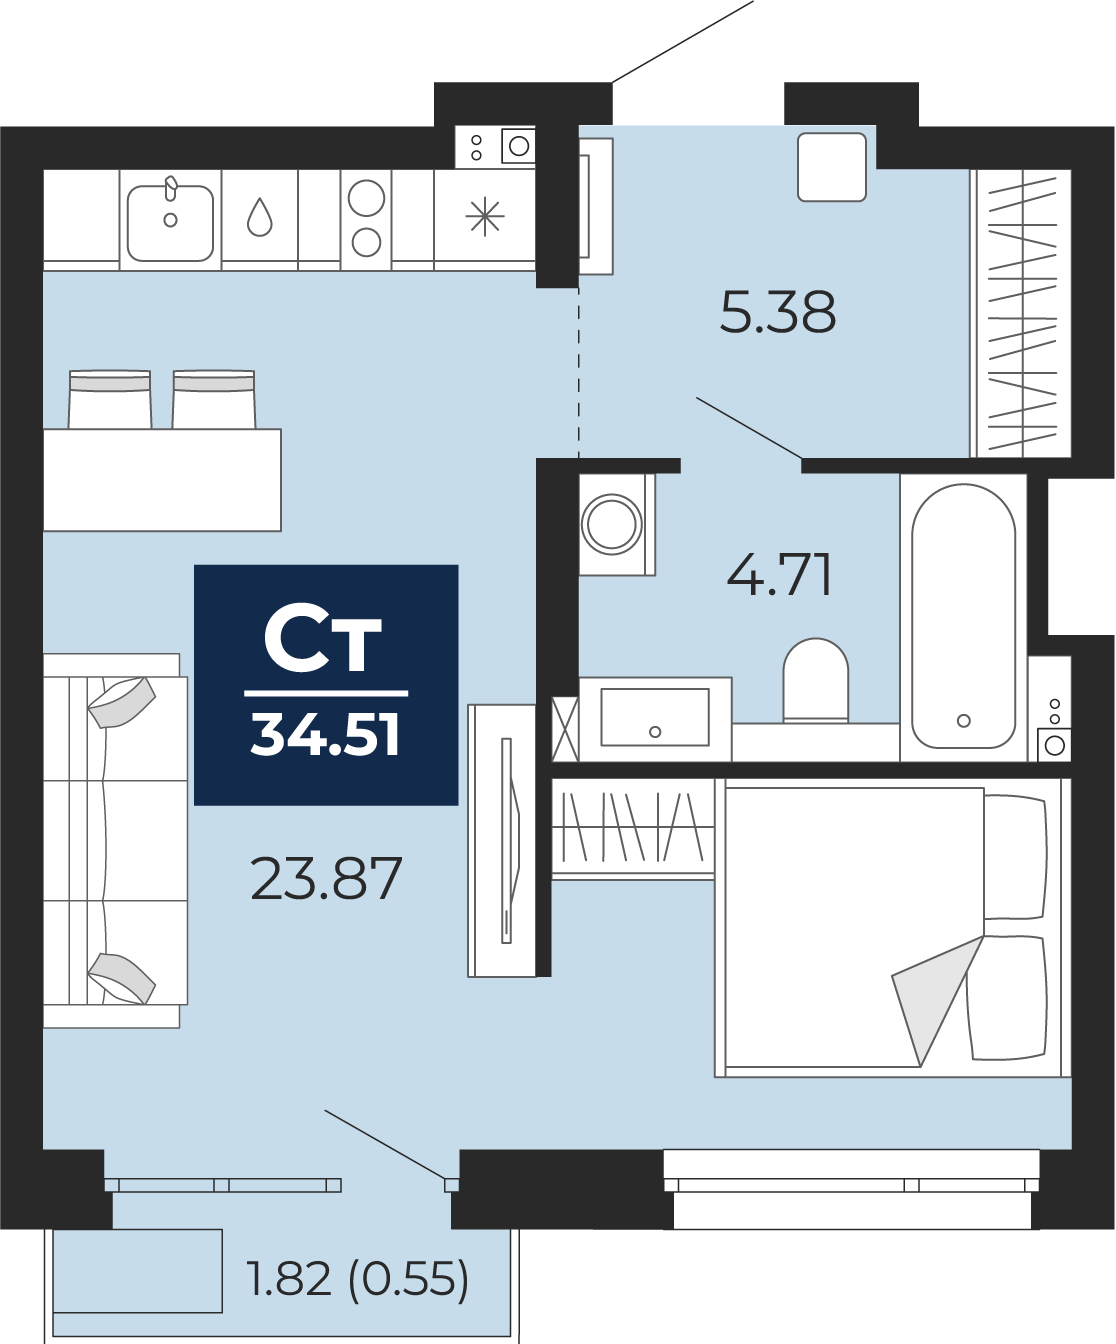 Квартира № 355, Студия, 34.51 кв. м, 6 этаж